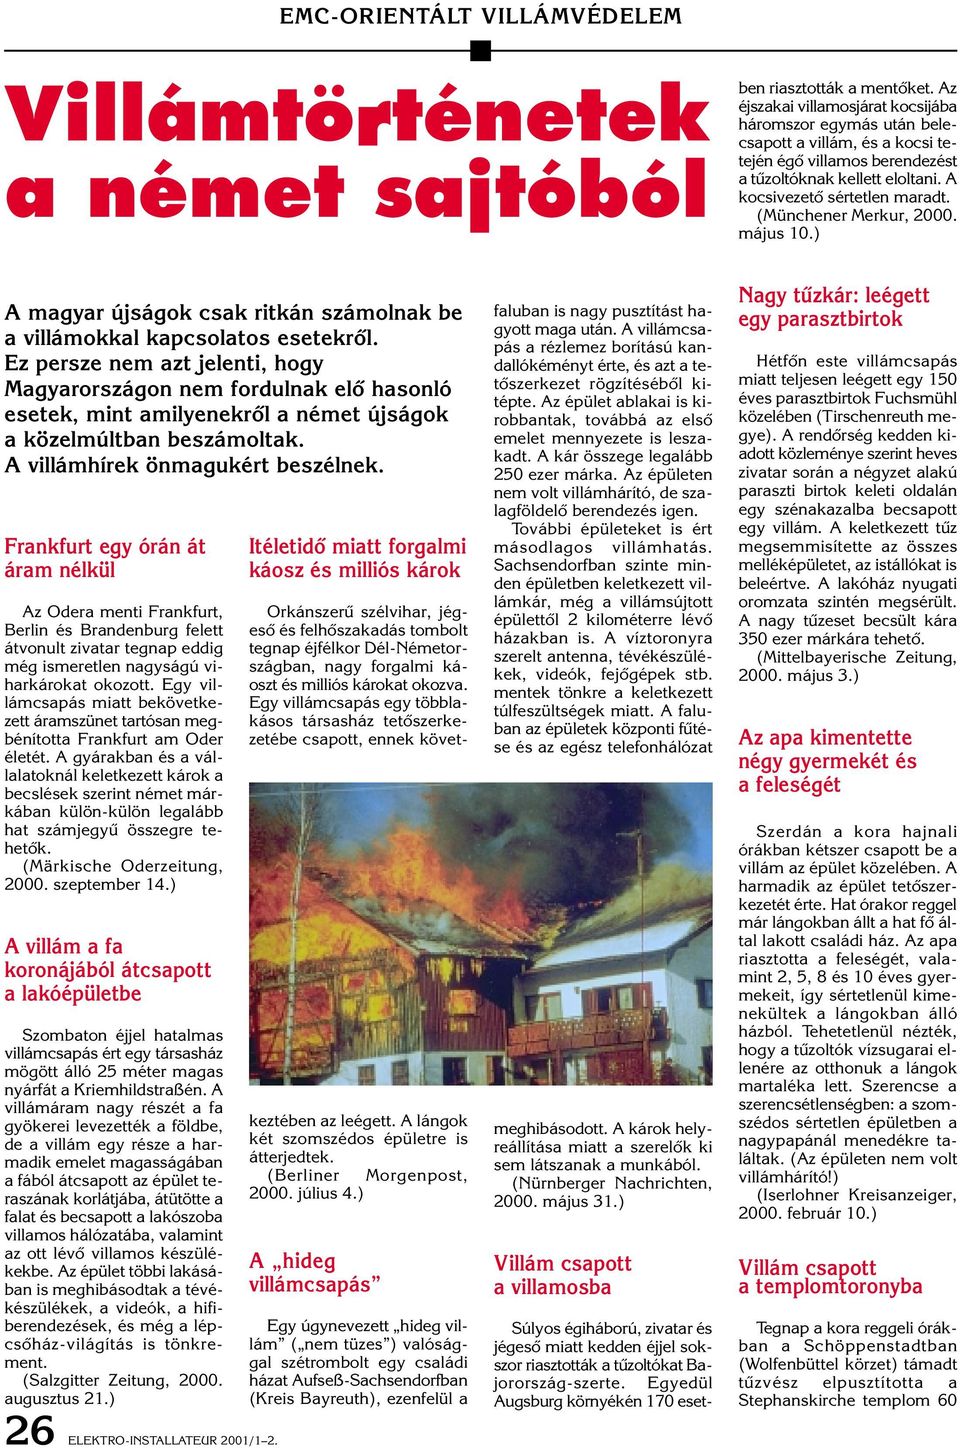 (Münchener Merkur, 2000. május 10.) A magyar újságok csak ritkán számolnak be a villámokkal kapcsolatos esetekrôl.